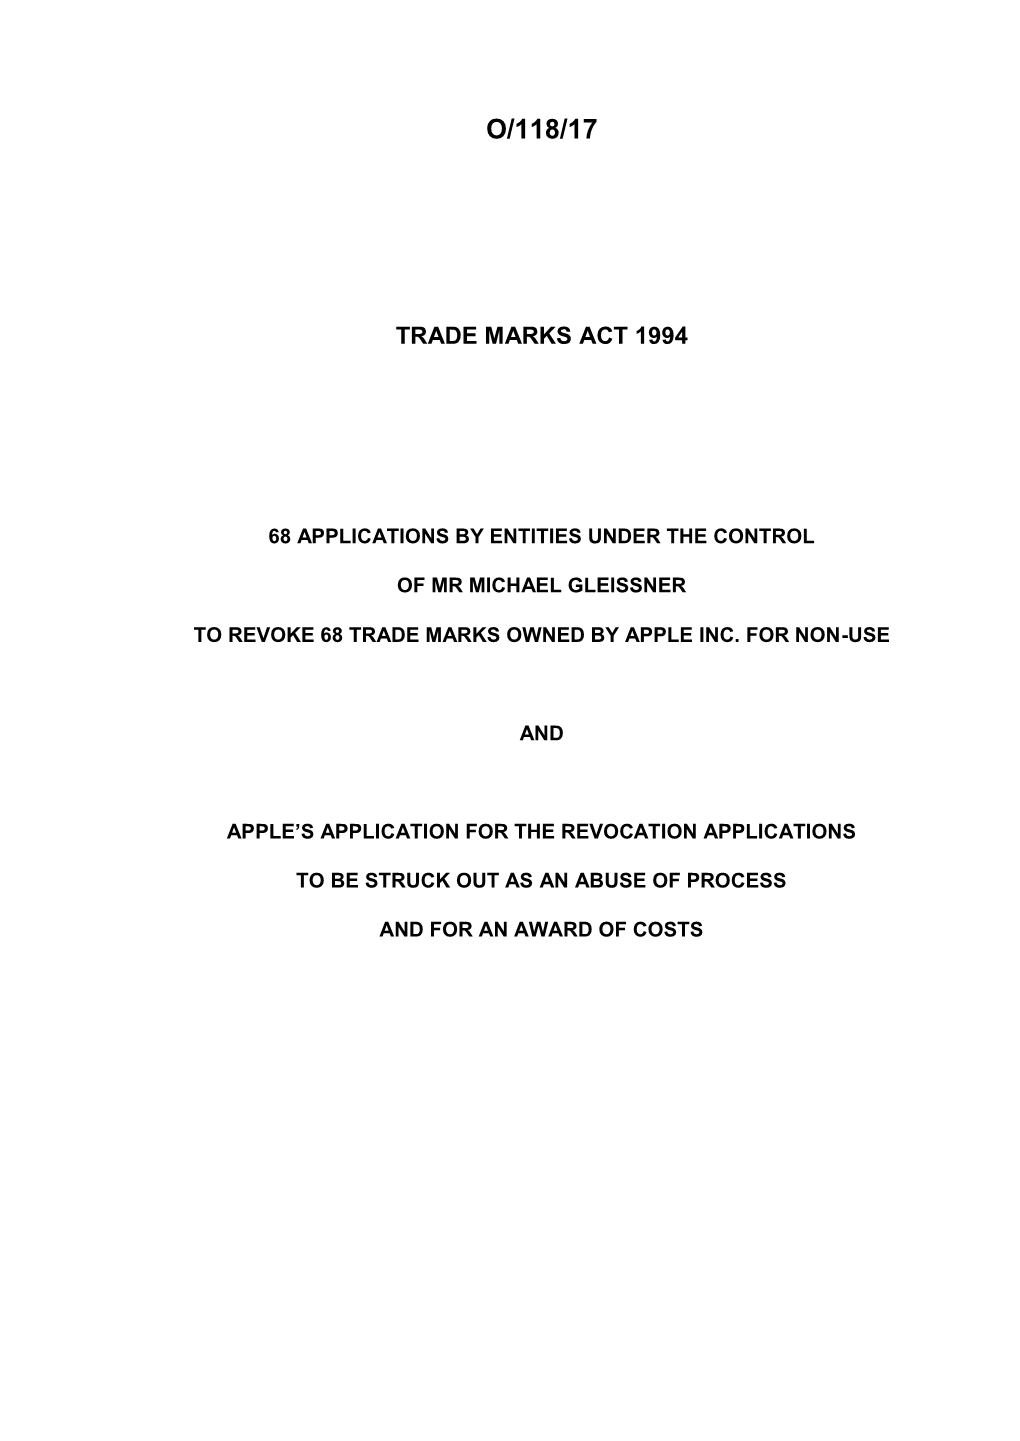 Trade Marks Inter Partes Decision O/118/17